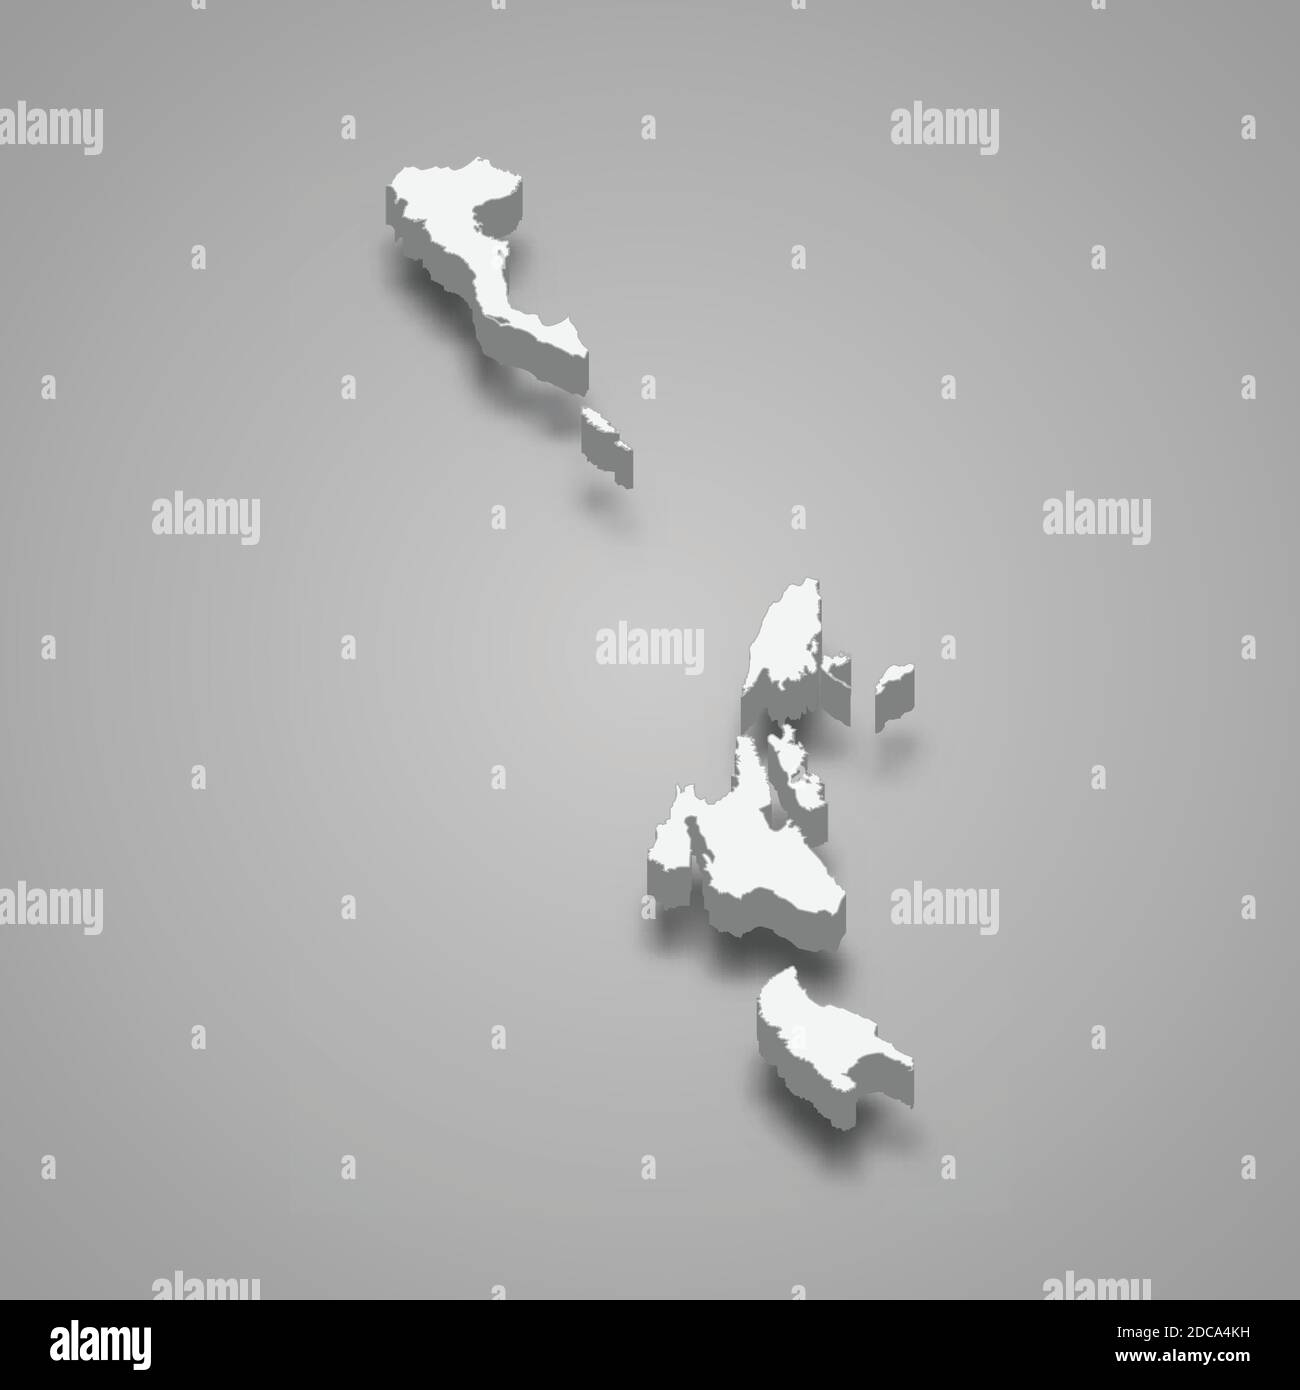 La carte isométrique 3d des îles Ioniennes est une région de la Grèce, illustration vectorielle Illustration de Vecteur